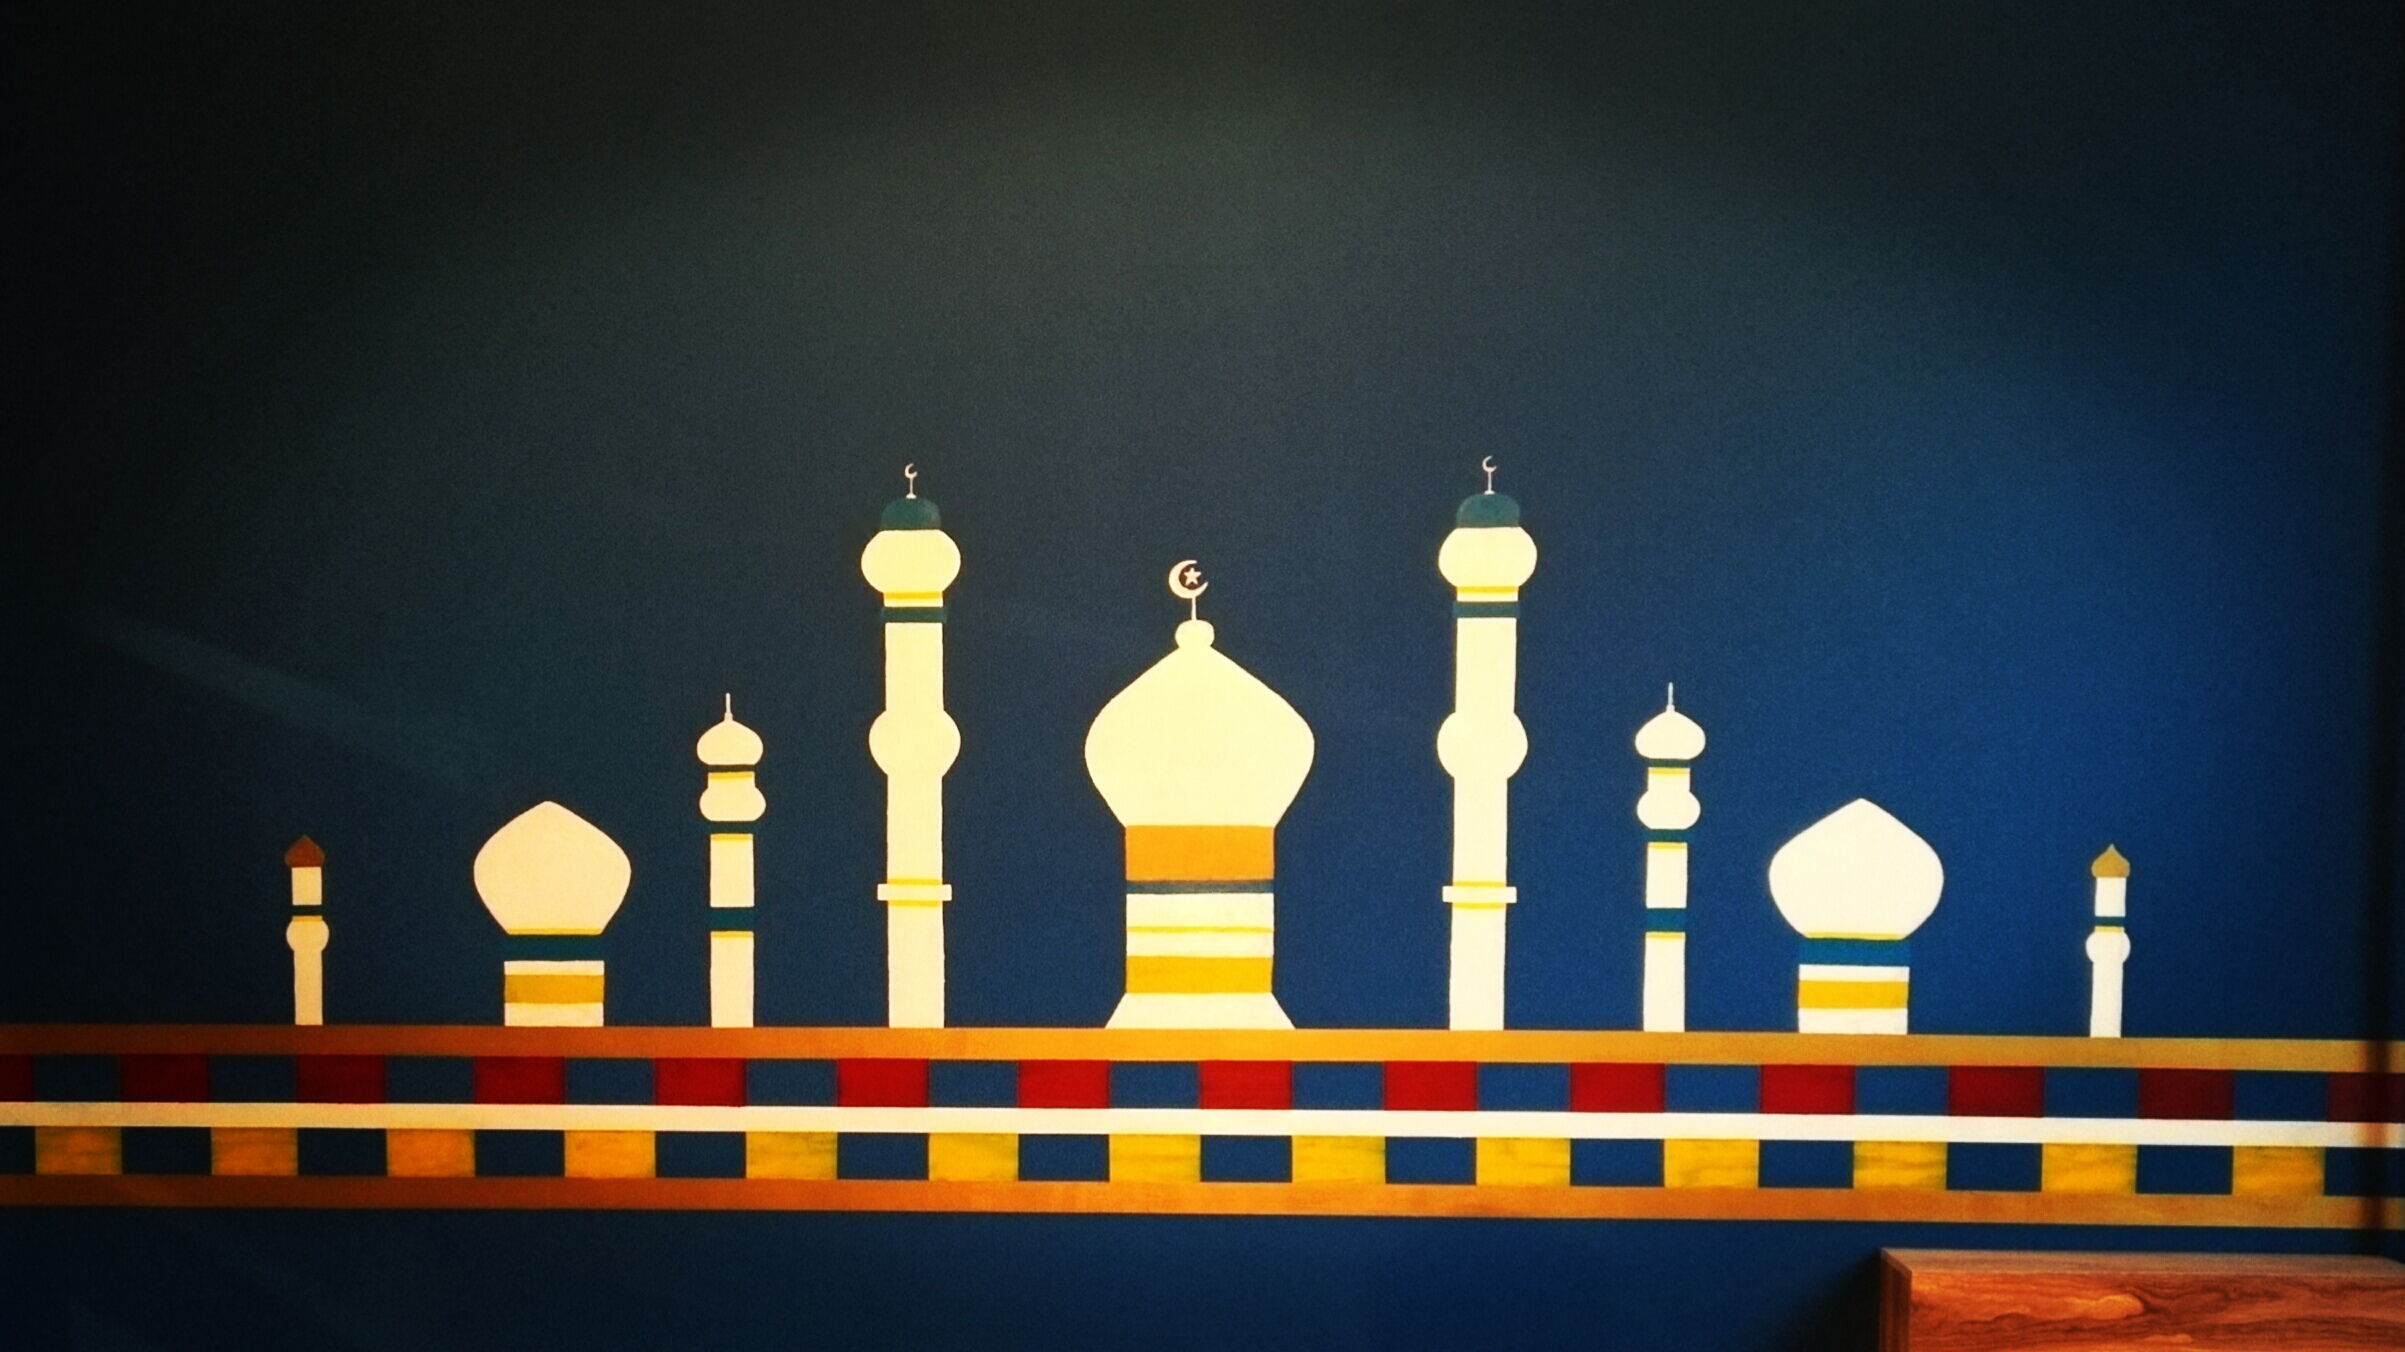 给朋友做的伊斯兰风格手绘墙,你喜欢吗?